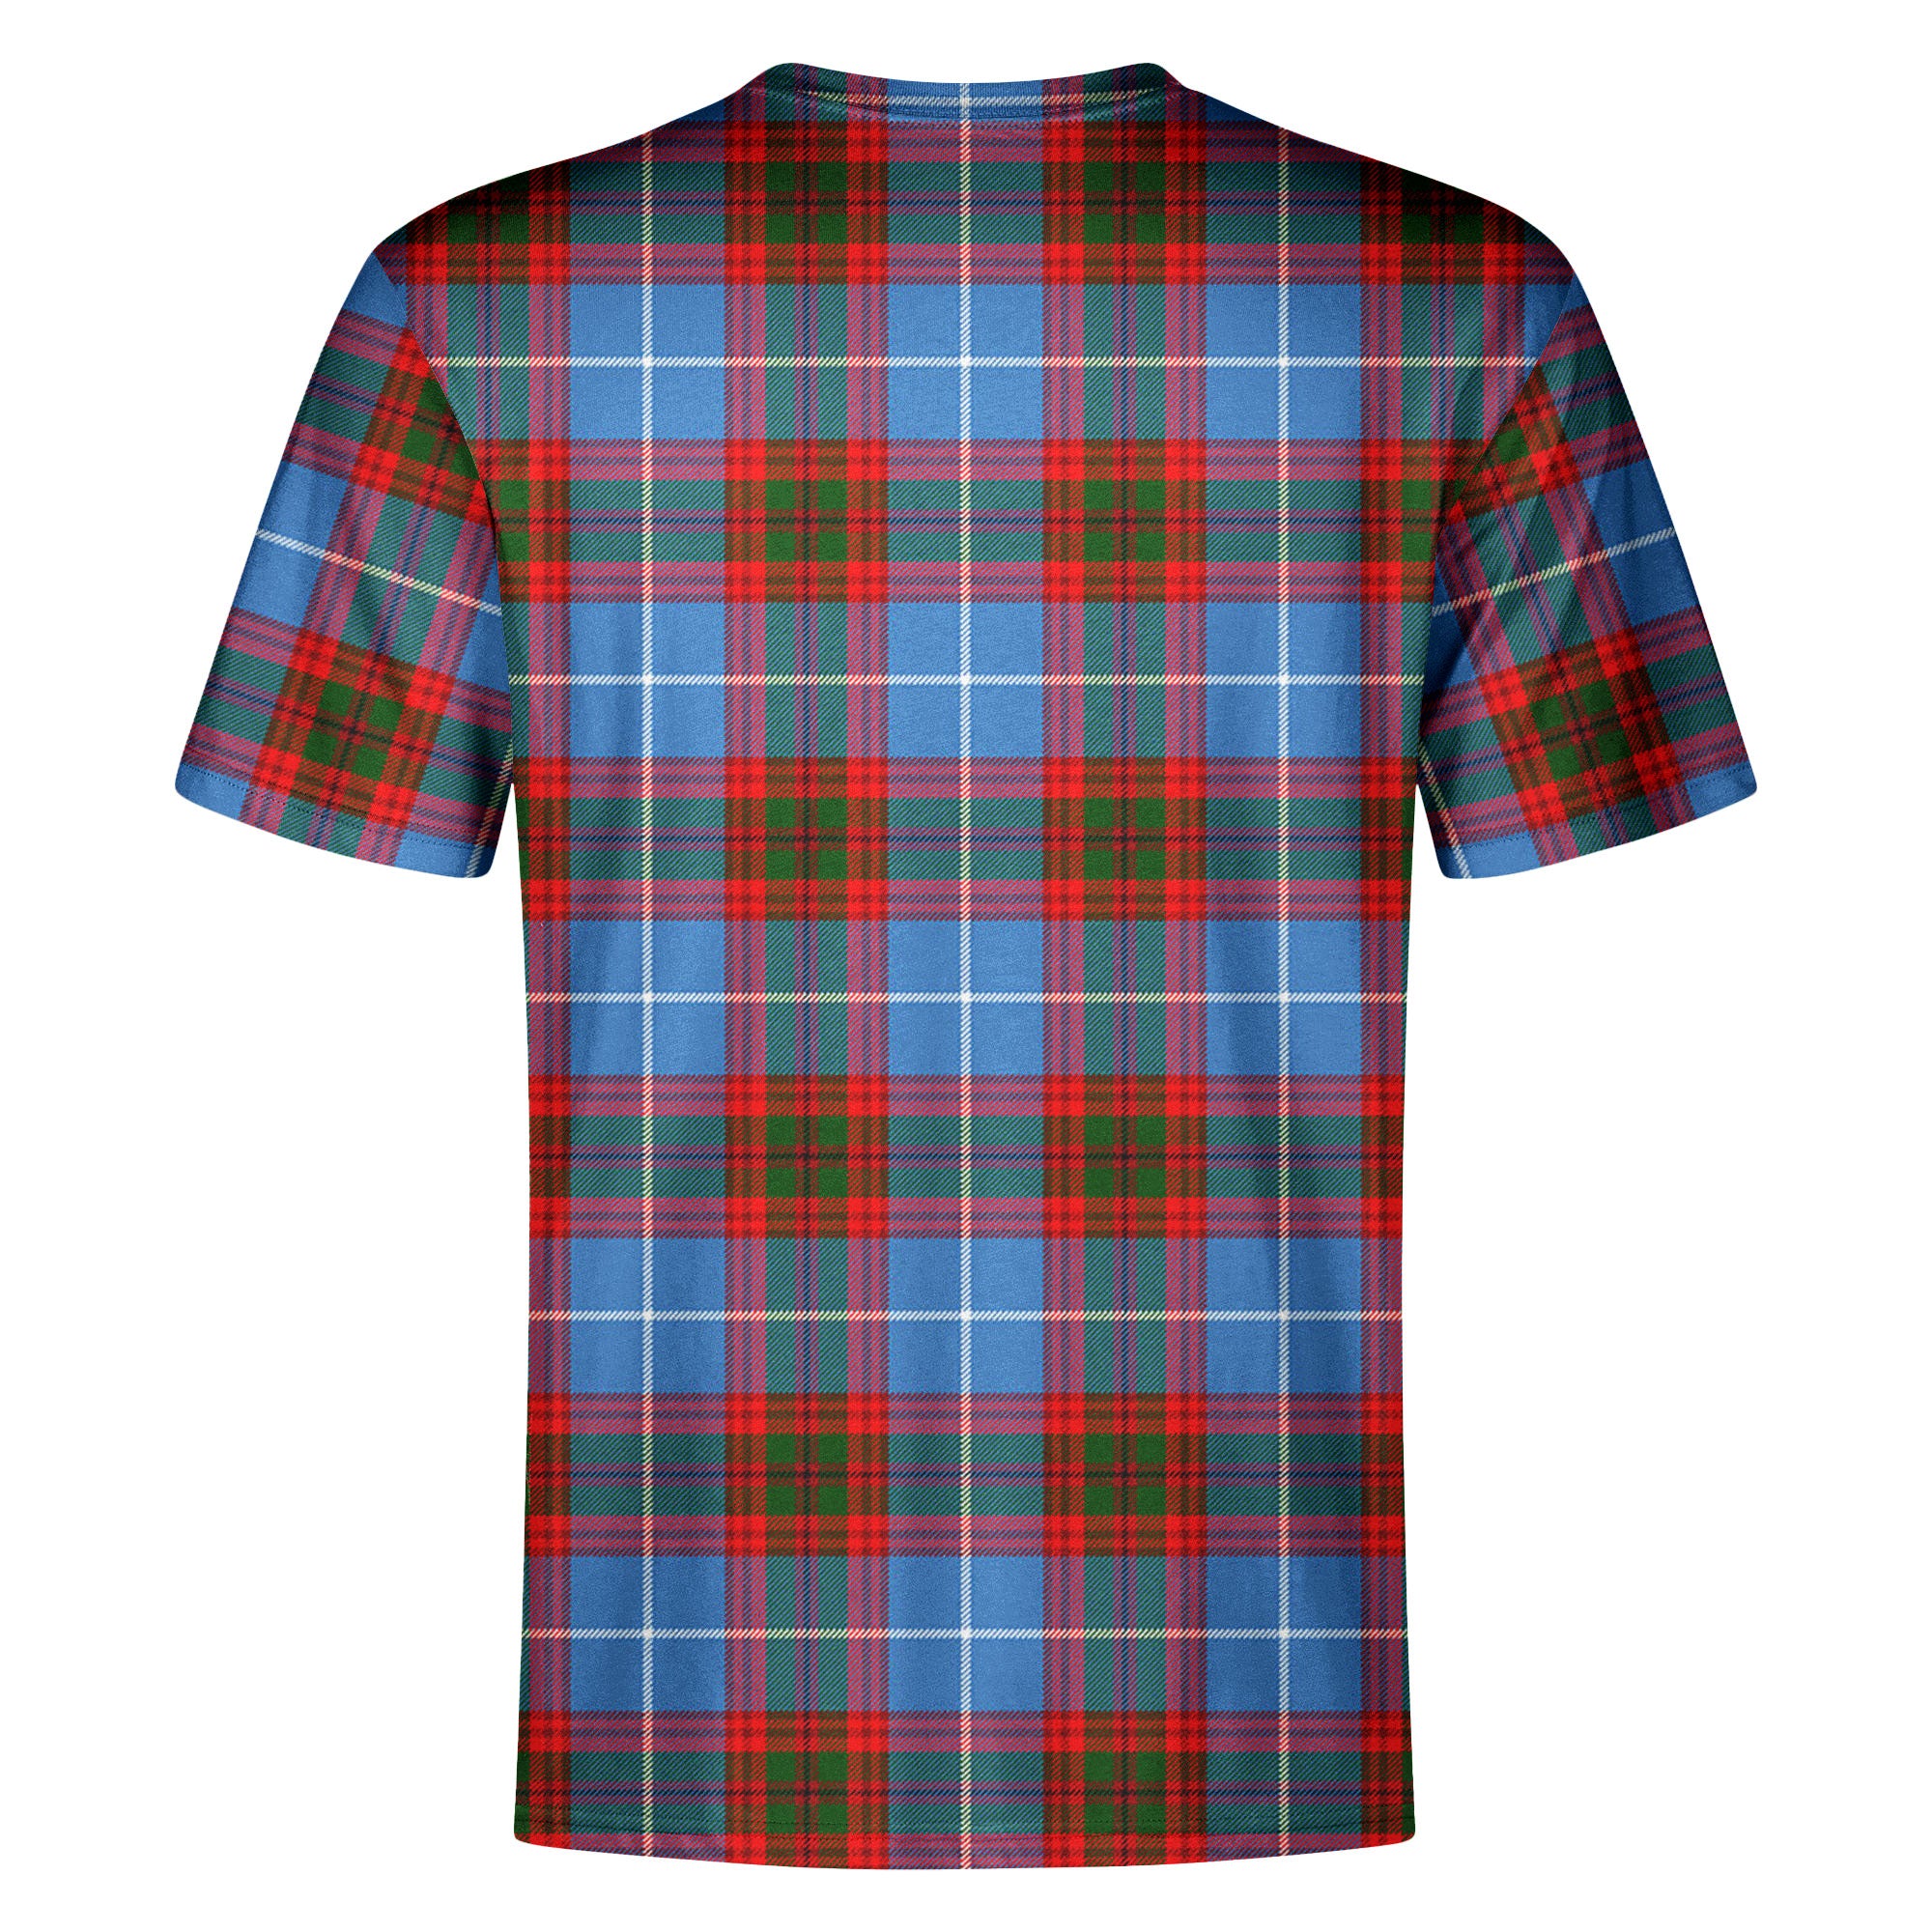 Trotter Tartan Crest T-shirt